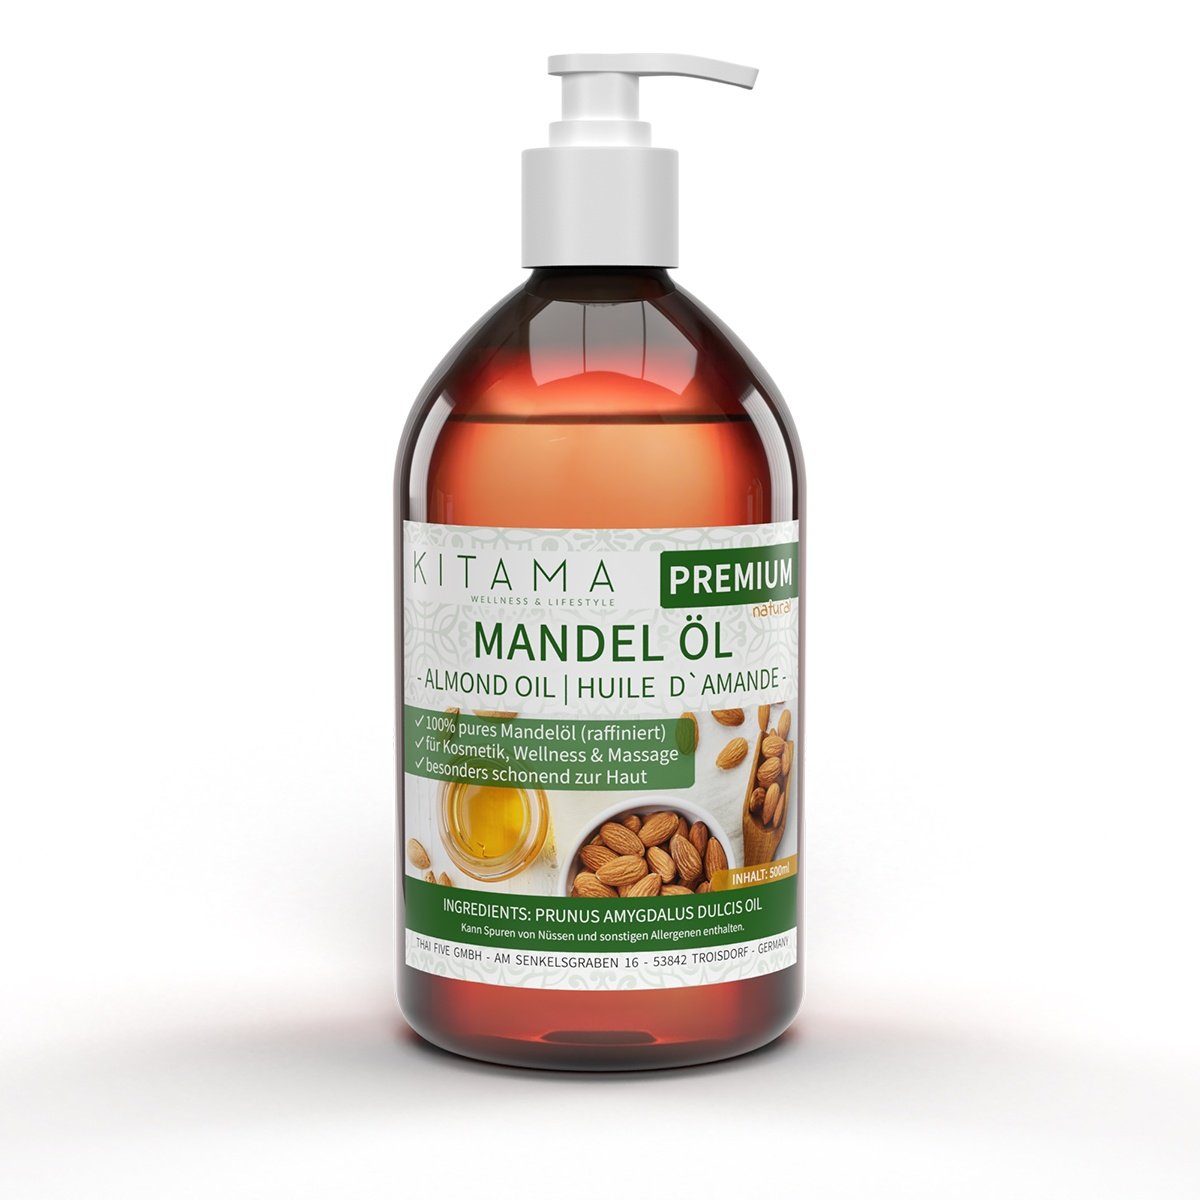 Kitama Körperöl Haar Baby-Öl, sanftes & Pflege-Öl für - Massageöl Mandelöl Basisöl Naturkosmetik 500ml, Haut